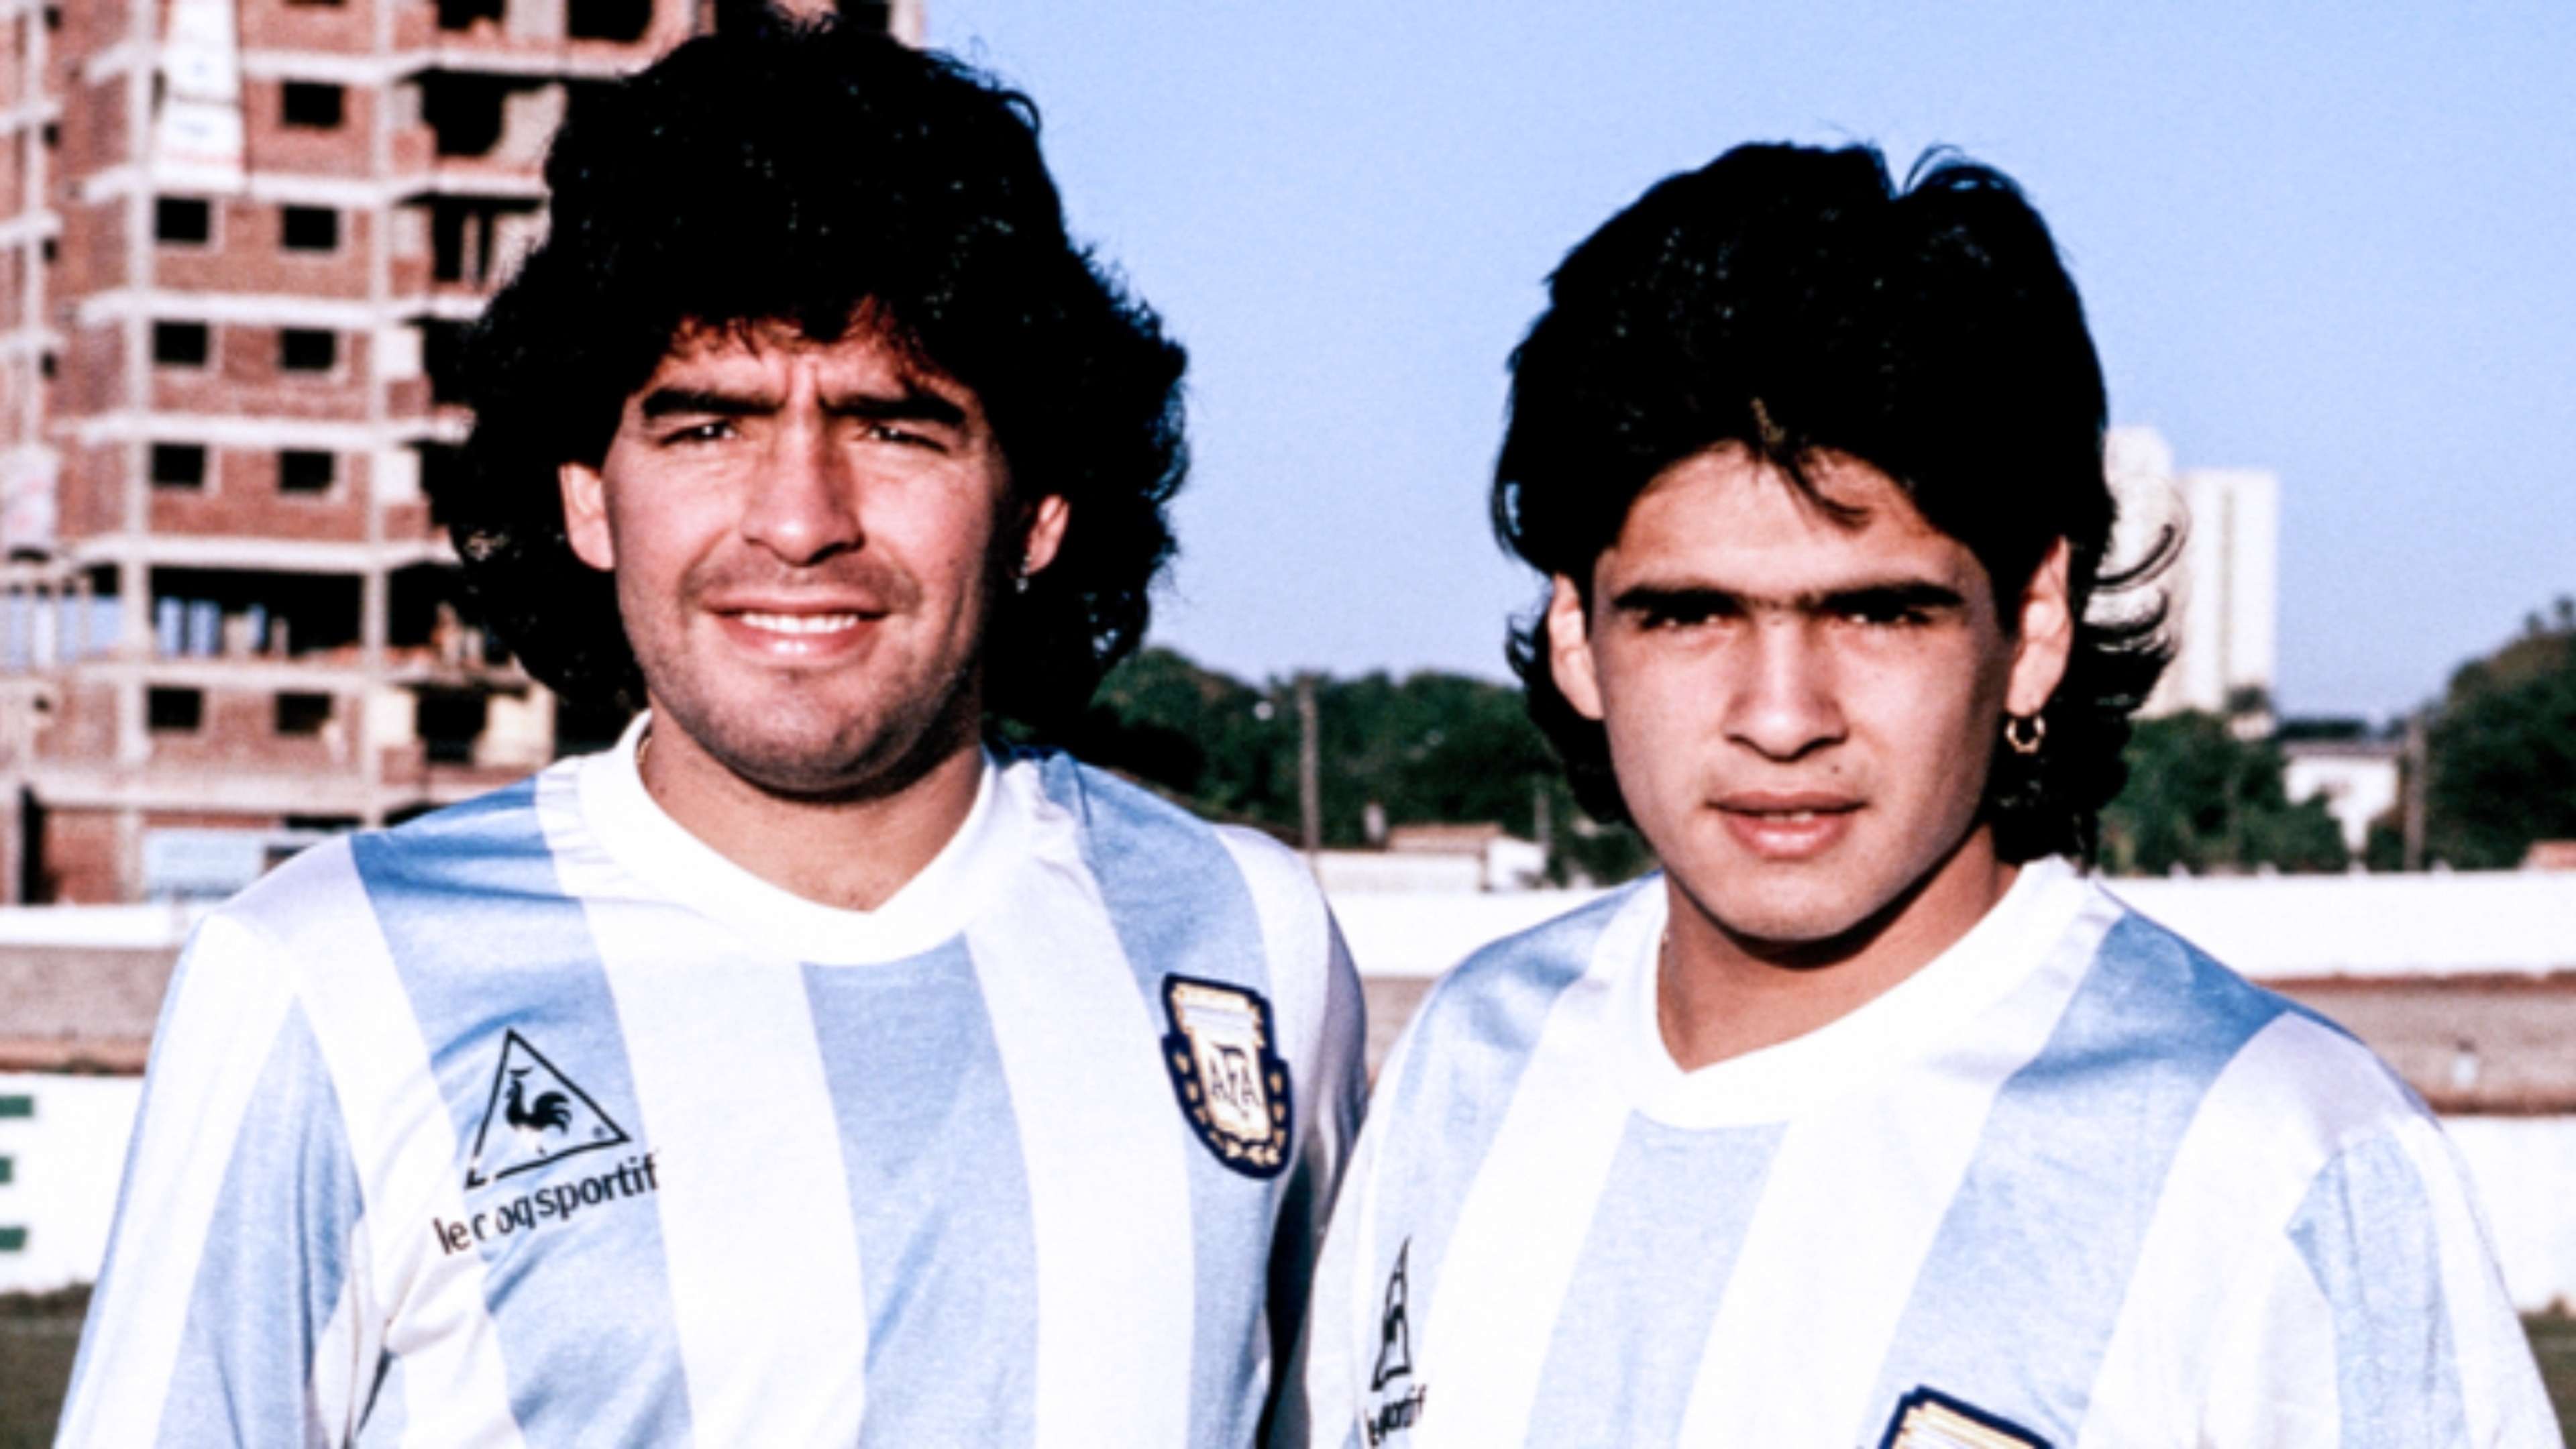 Diego e Hugo Maradona Argentina